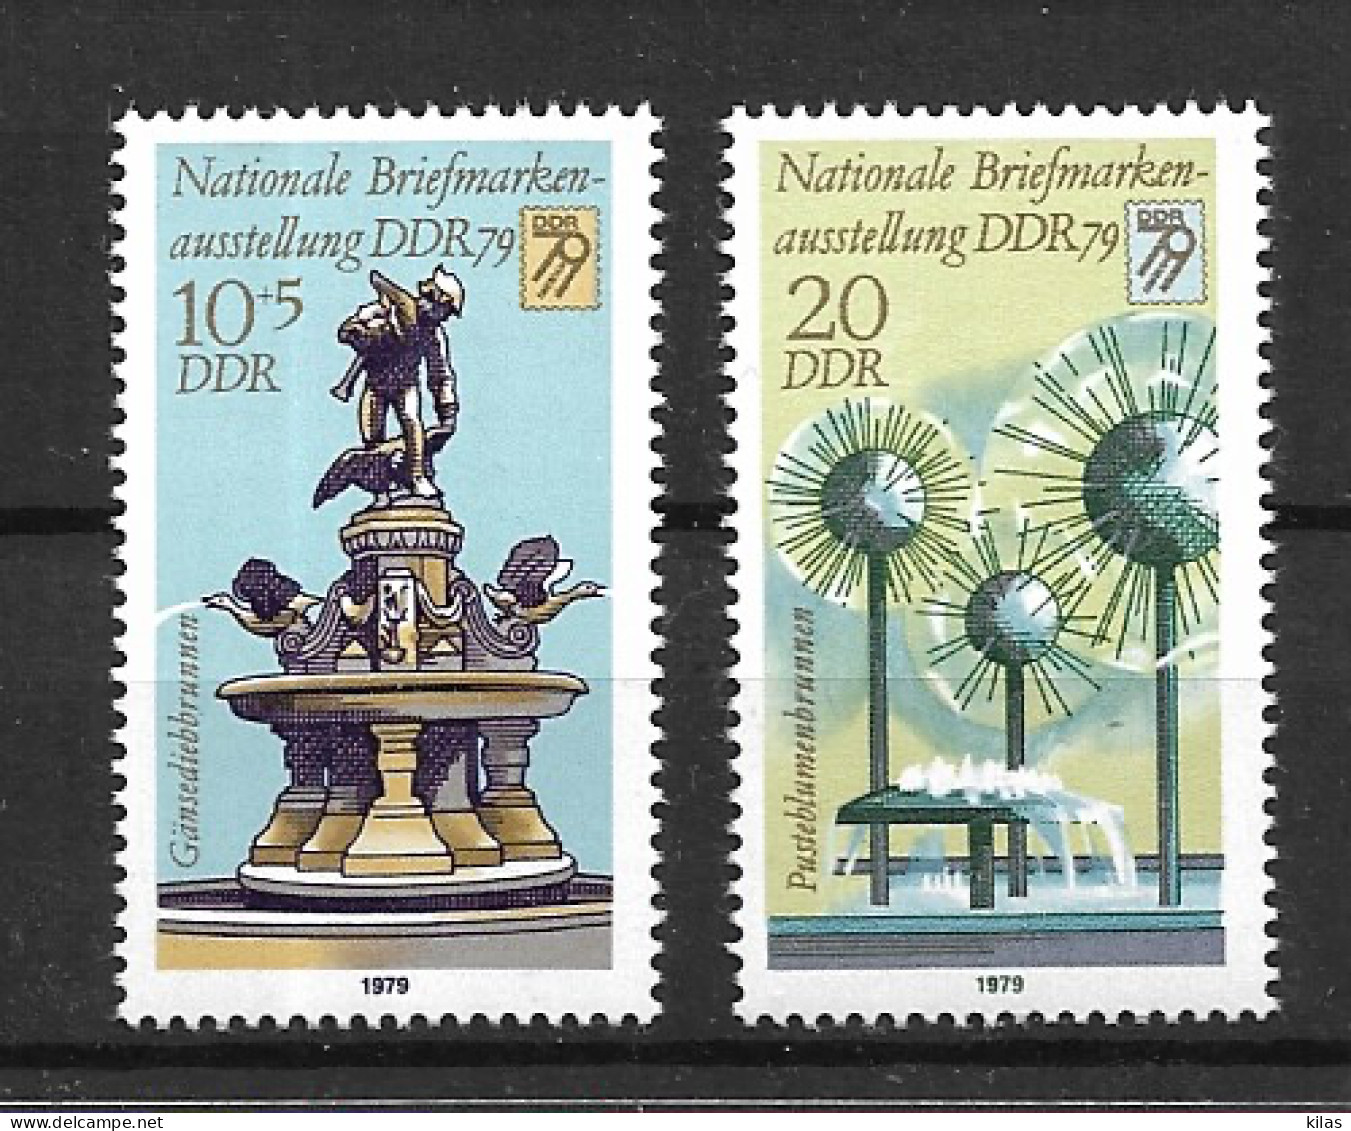 GERMANY, DEMOCRATIC REPUBLIC 1979  DDR 79' + PROOF - Variedades Y Curiosidades